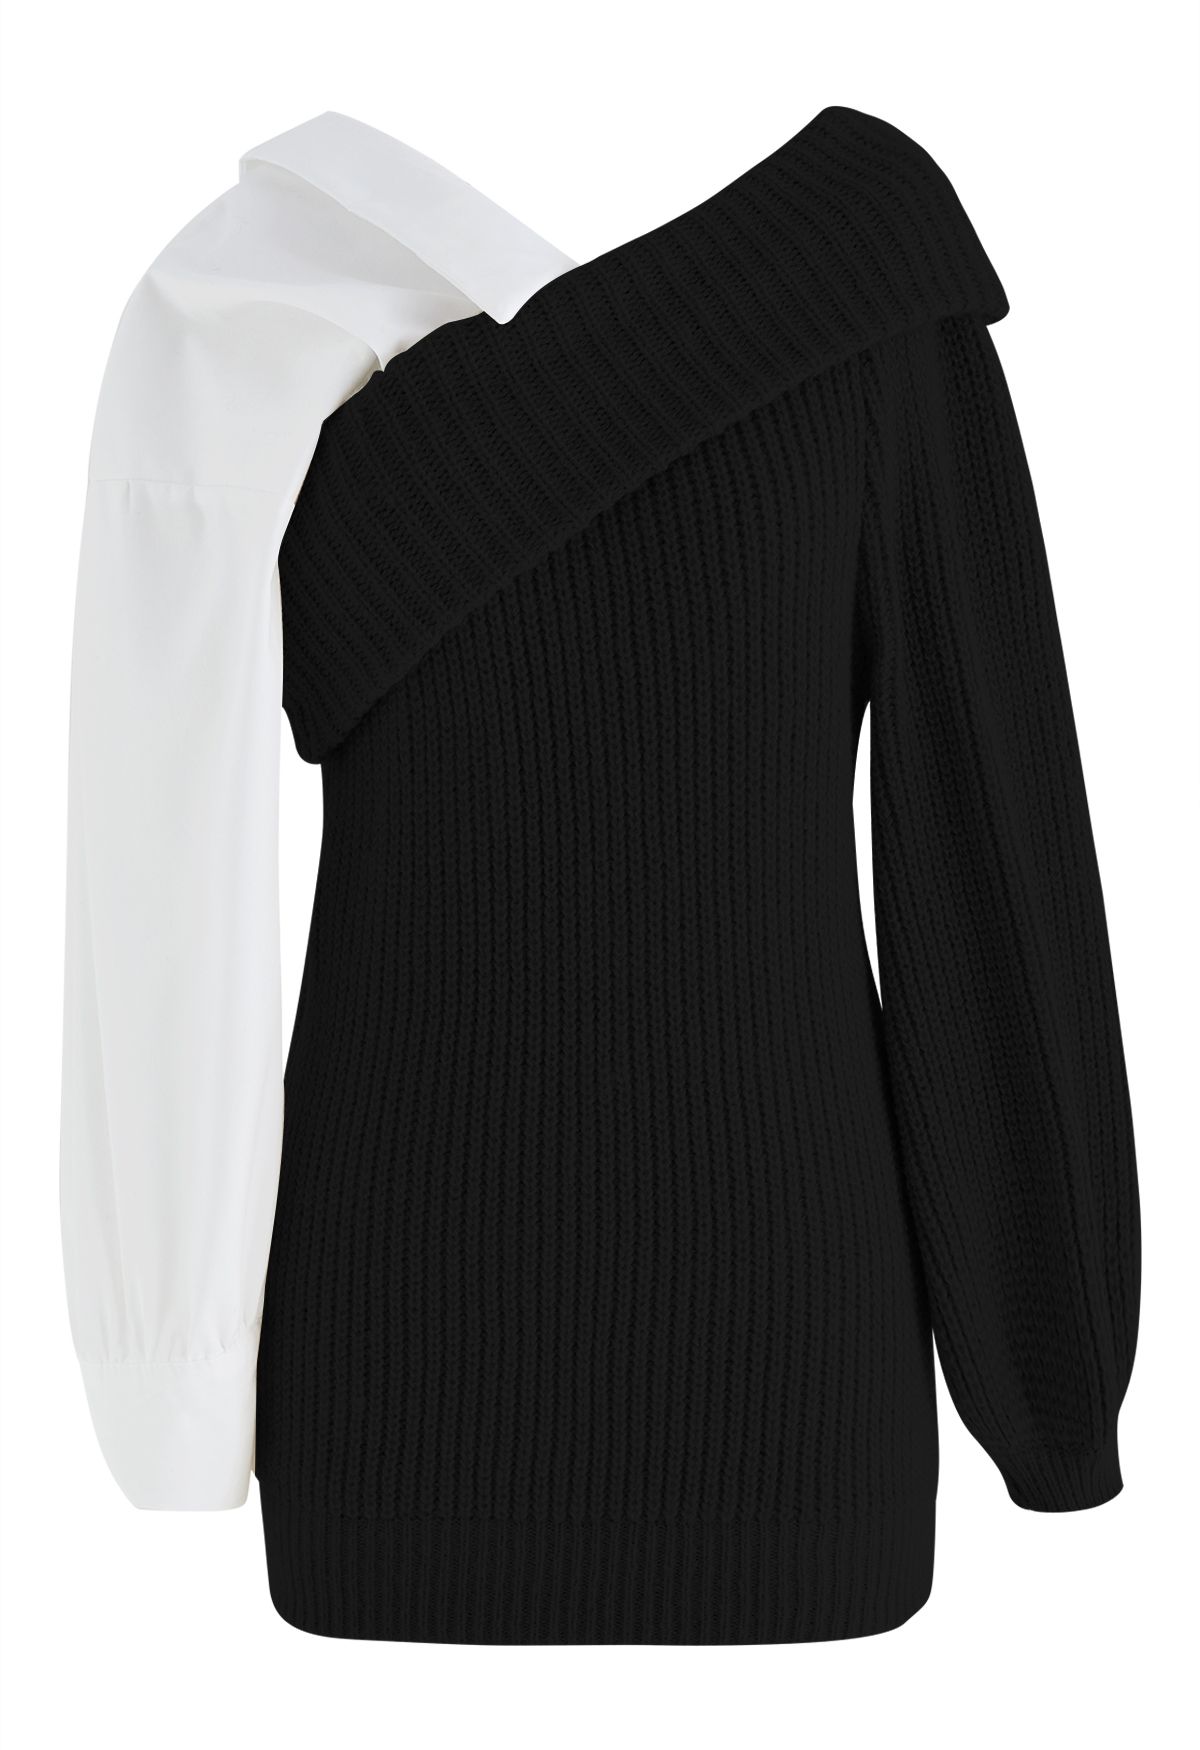 Suéter de punto acanalado con hombros doblados y empalmados en negro